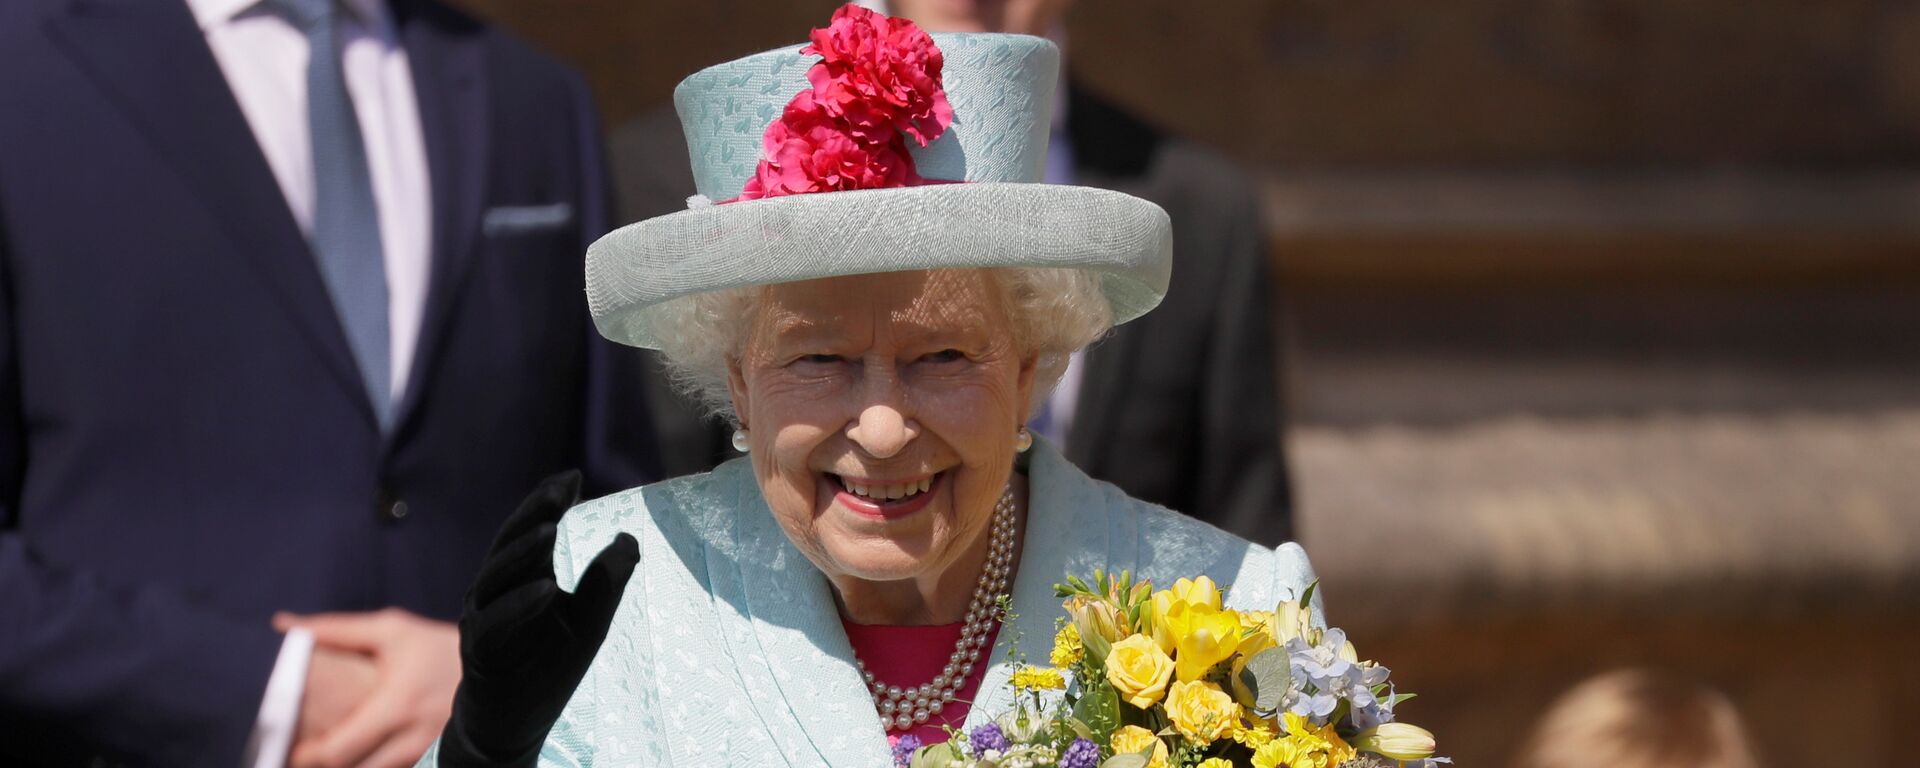 الملكة إليزابيث تغادر كنيسة القديس جورج في قلعة وندسور بعد حضورها خدمة عيد الفصح، بريطانيا، 21 نيسان/أبريل 2019 - سبوتنيك عربي, 1920, 25.12.2021